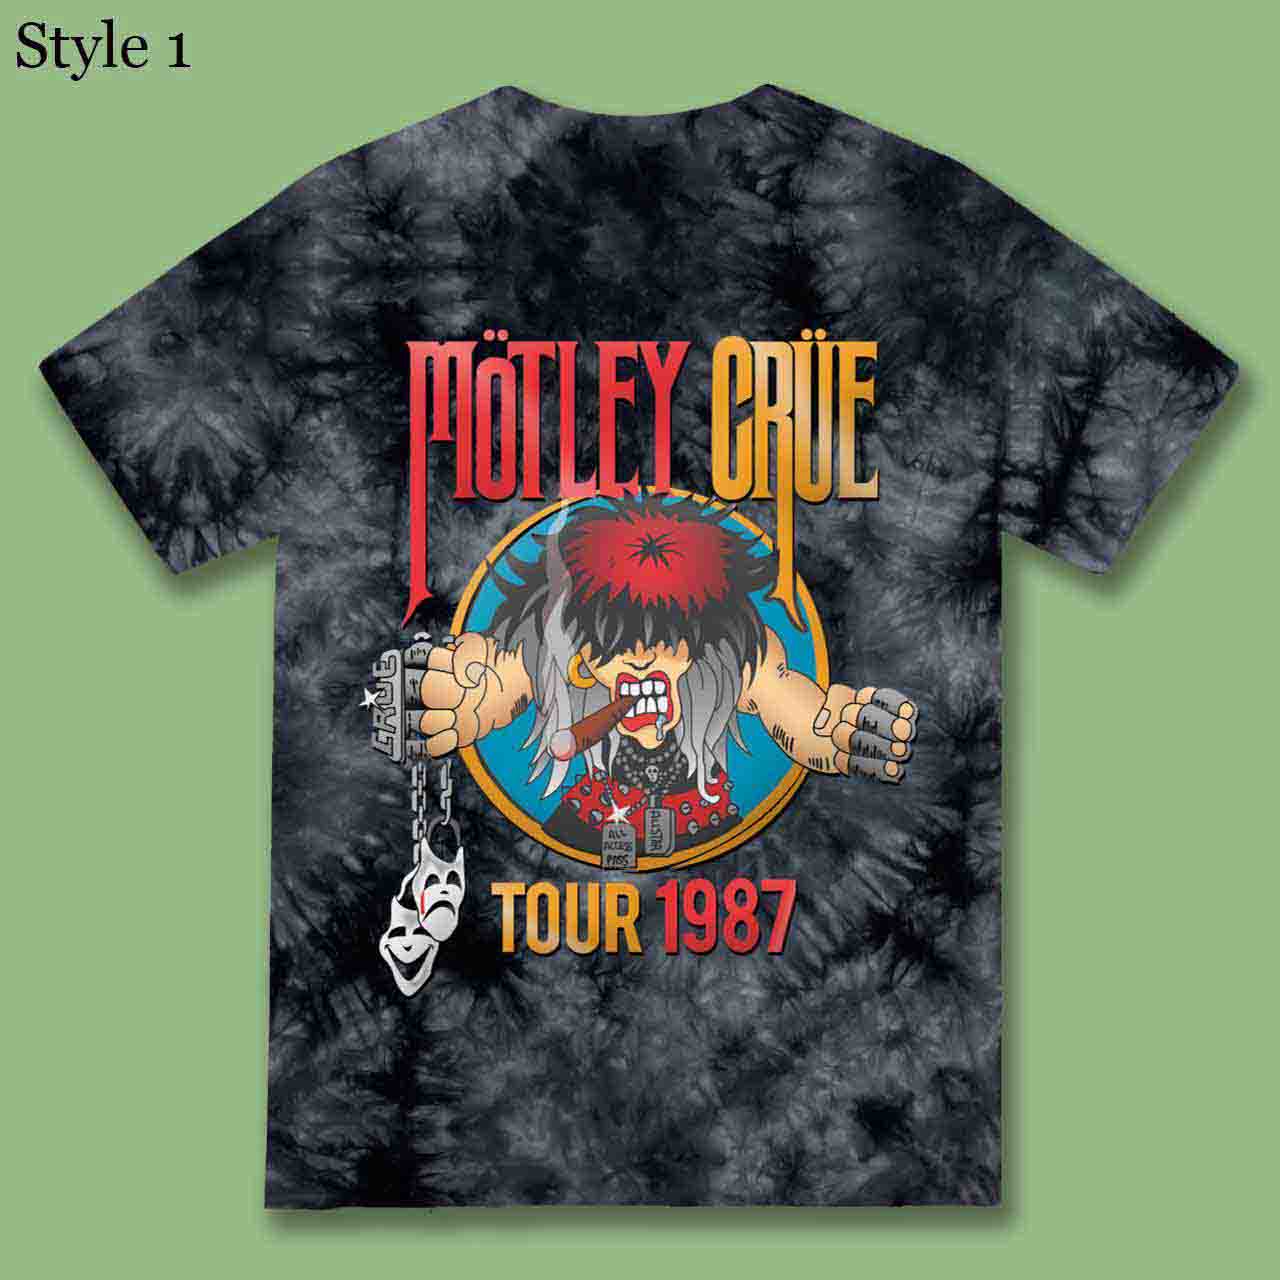 Replicated Motley Crue Tour 1987 Shirt Tie Dye